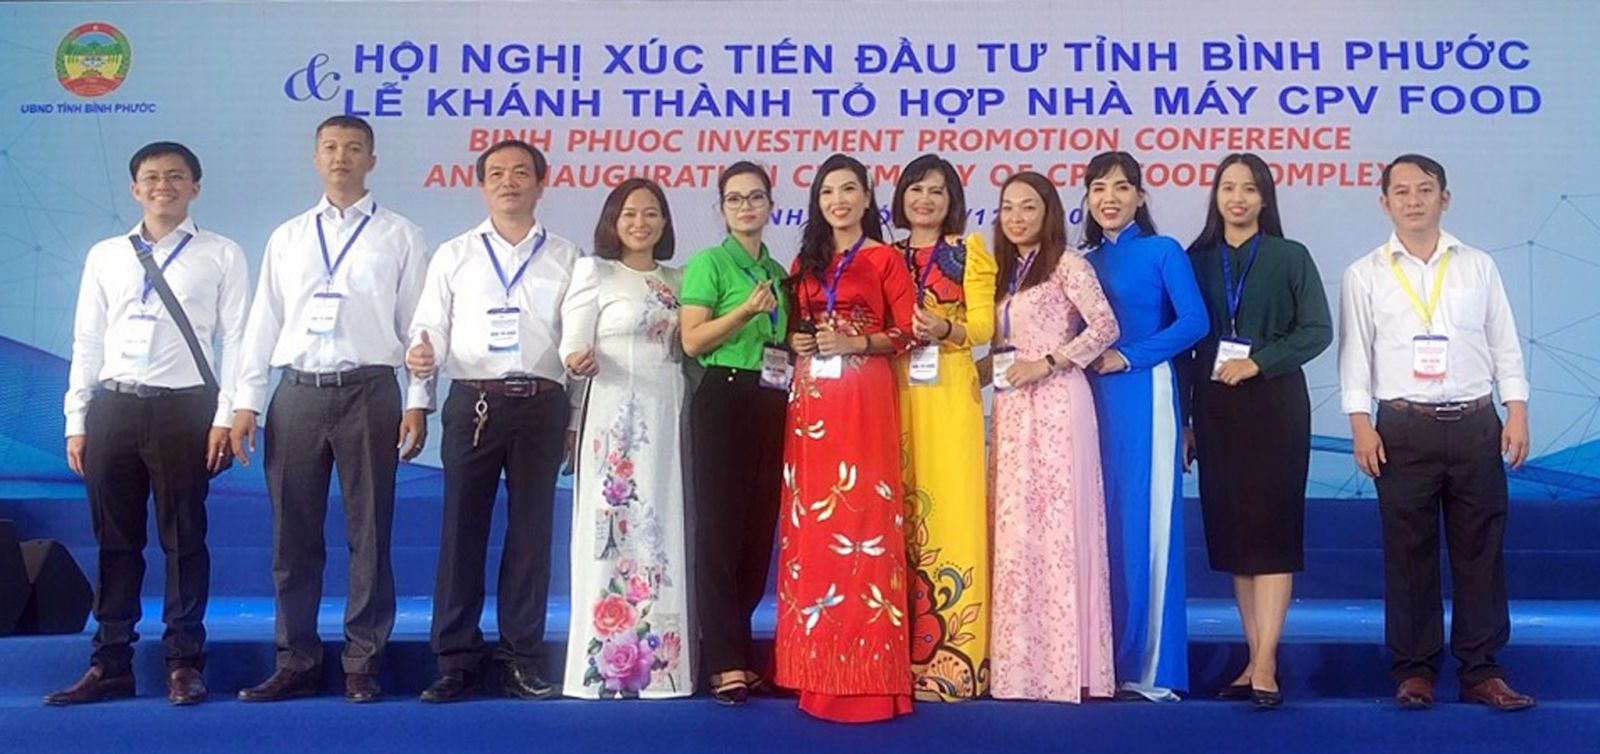  Phó Giám đốc Sở Kế hoạch và Đầu tư Nguyễn Đức Thành (thứ 3 từ trái sang) cùng các nhà đầu tư tại Hội nghị Xúc tiến đầu tư tỉnh Bình Phước.